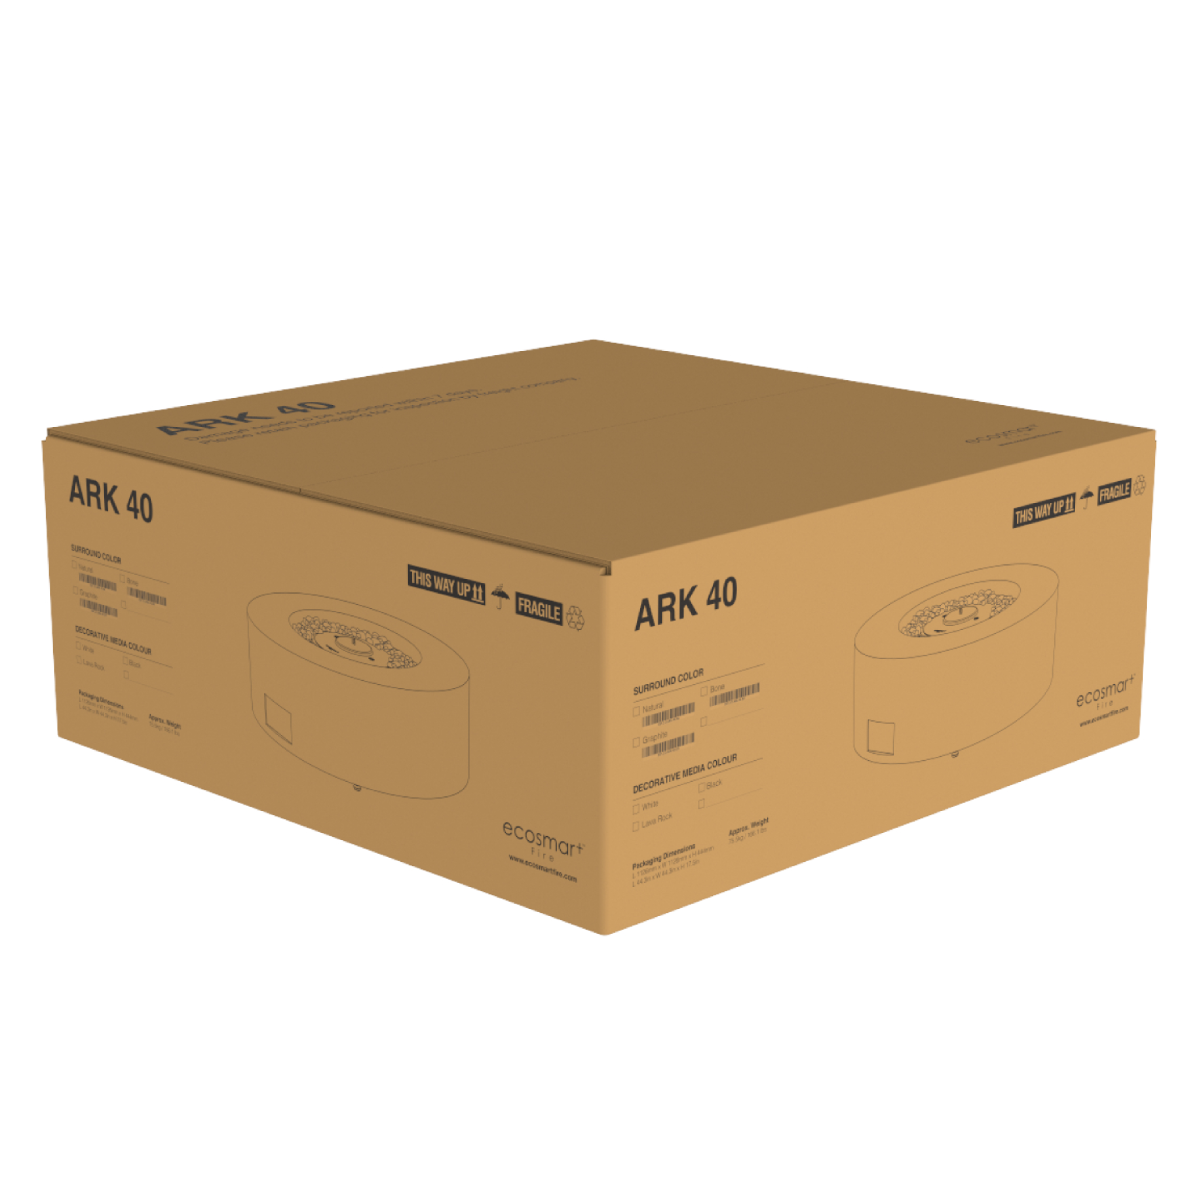 Verpakking EcoSmart Fire - Ark 40 vuurtafel in de doos